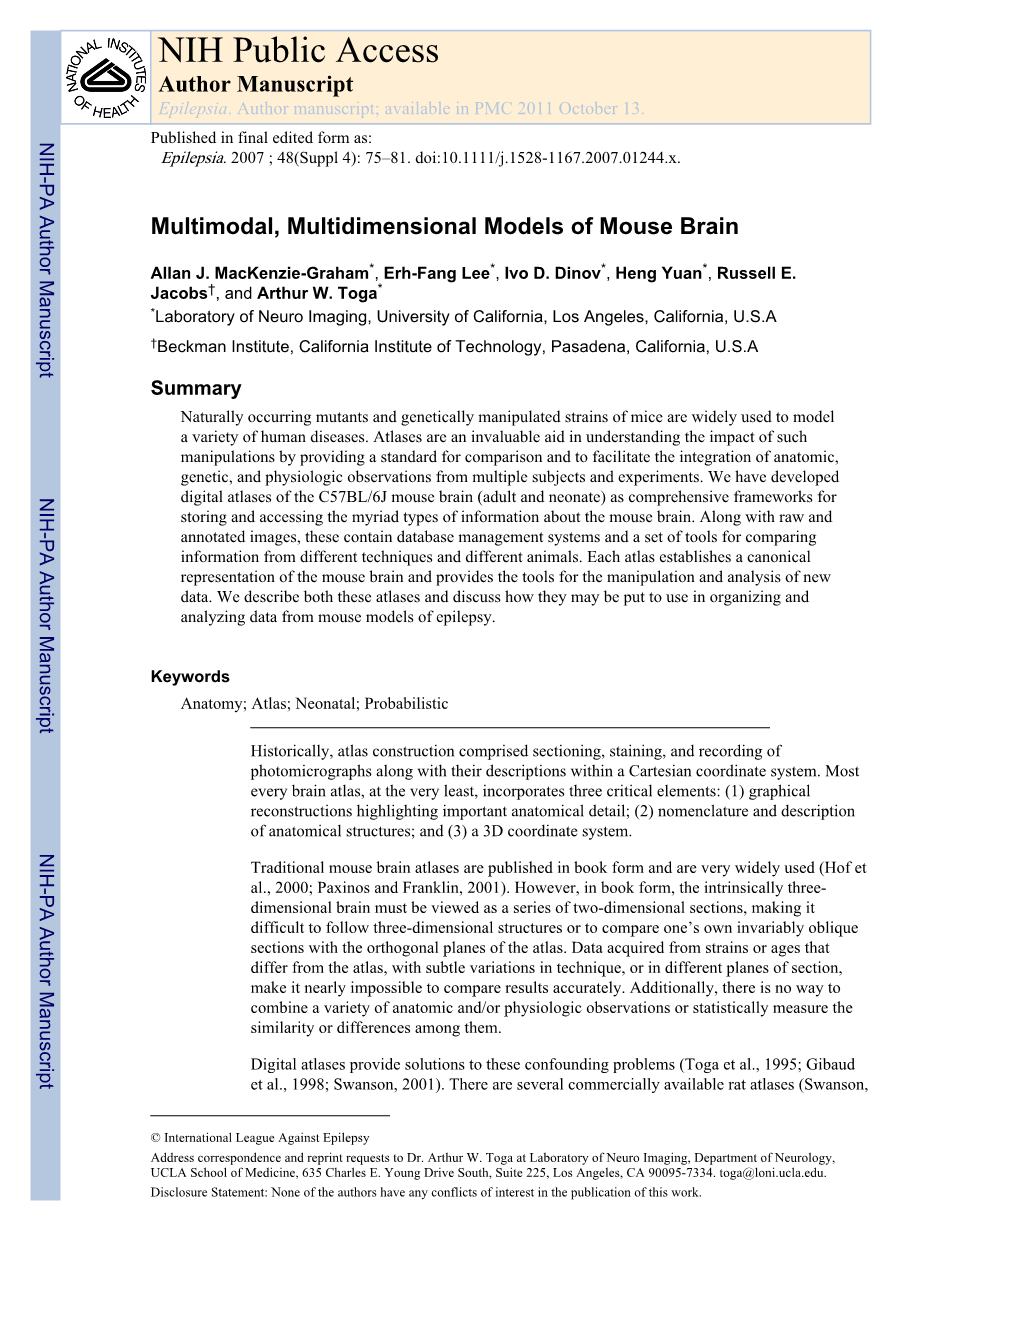 Multimodal, Multidimensional Models of Mouse Brain